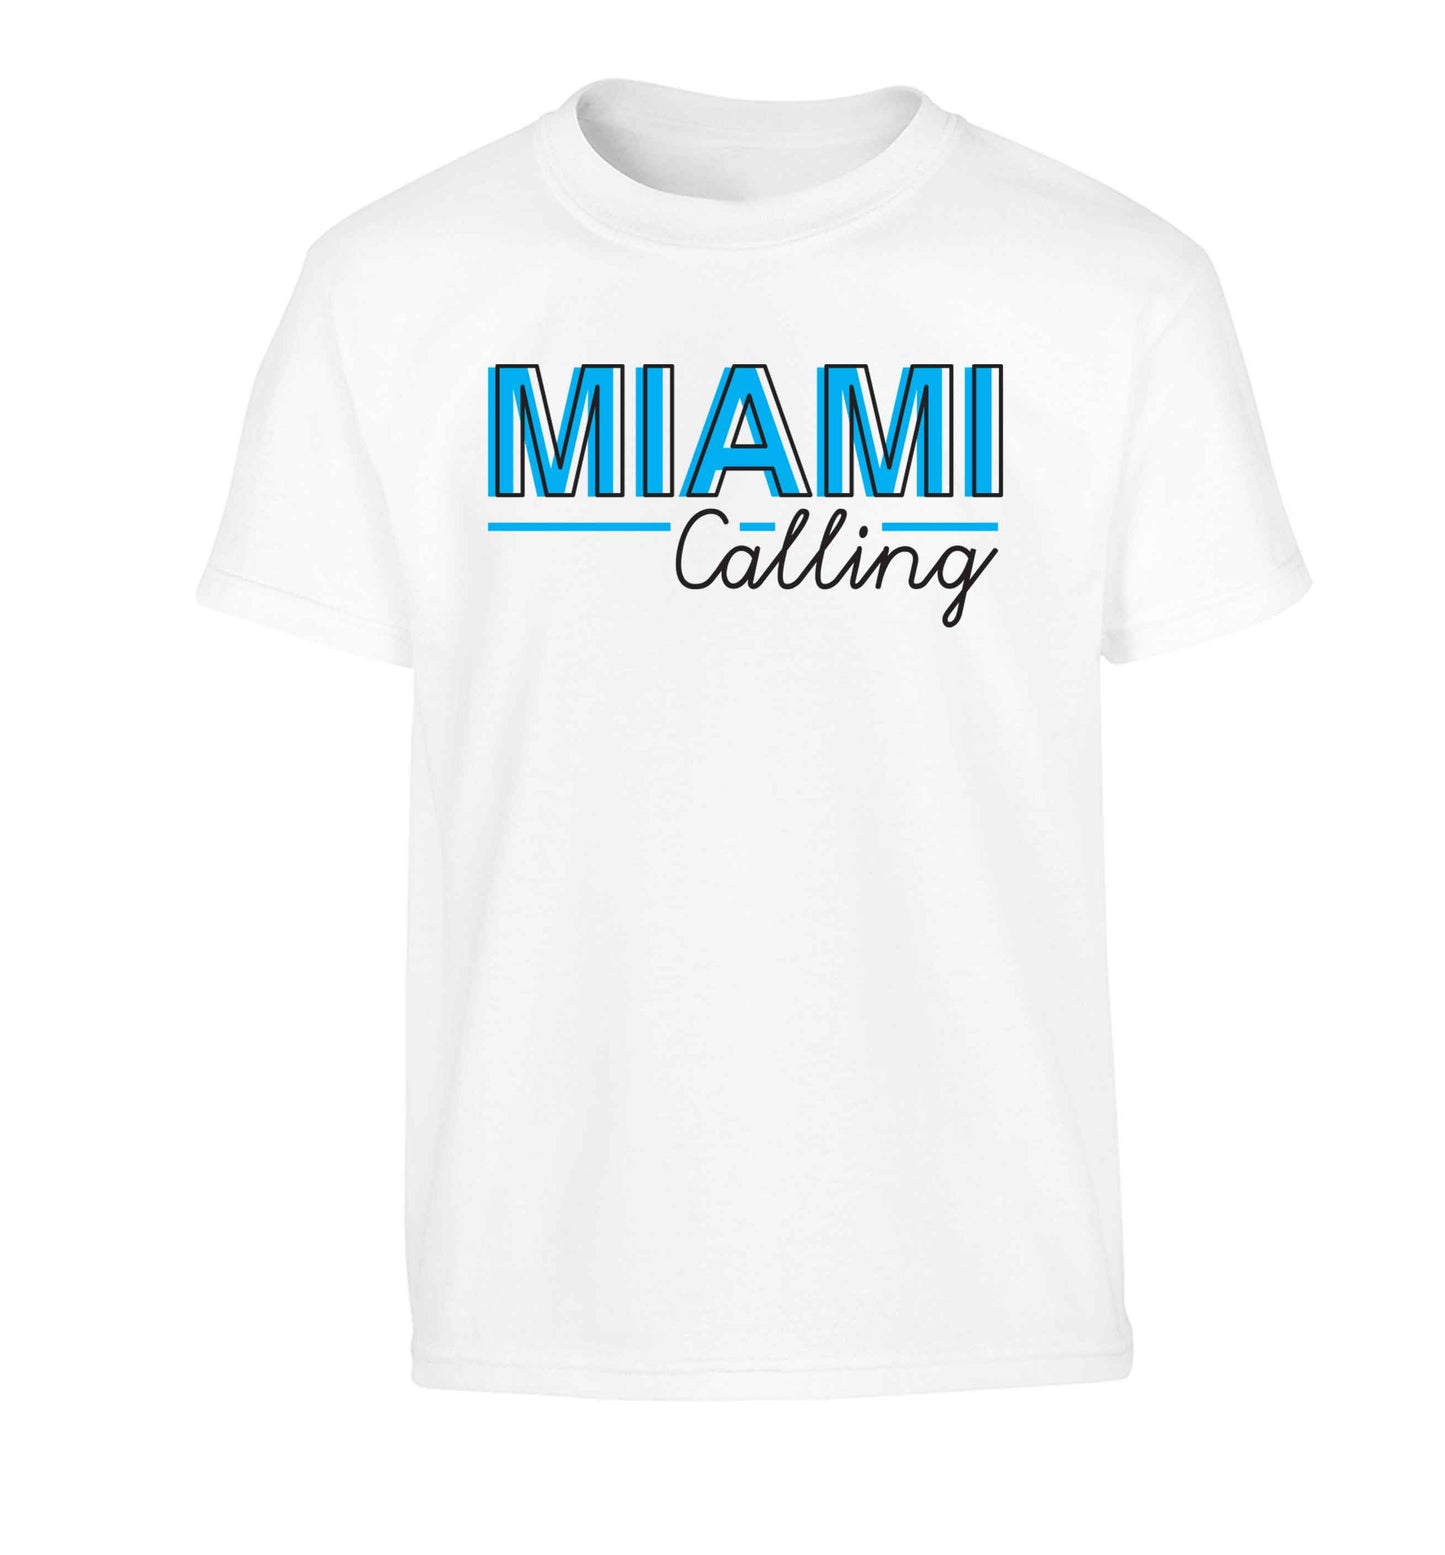 Miami calling Children's white Tshirt 12-13 Years